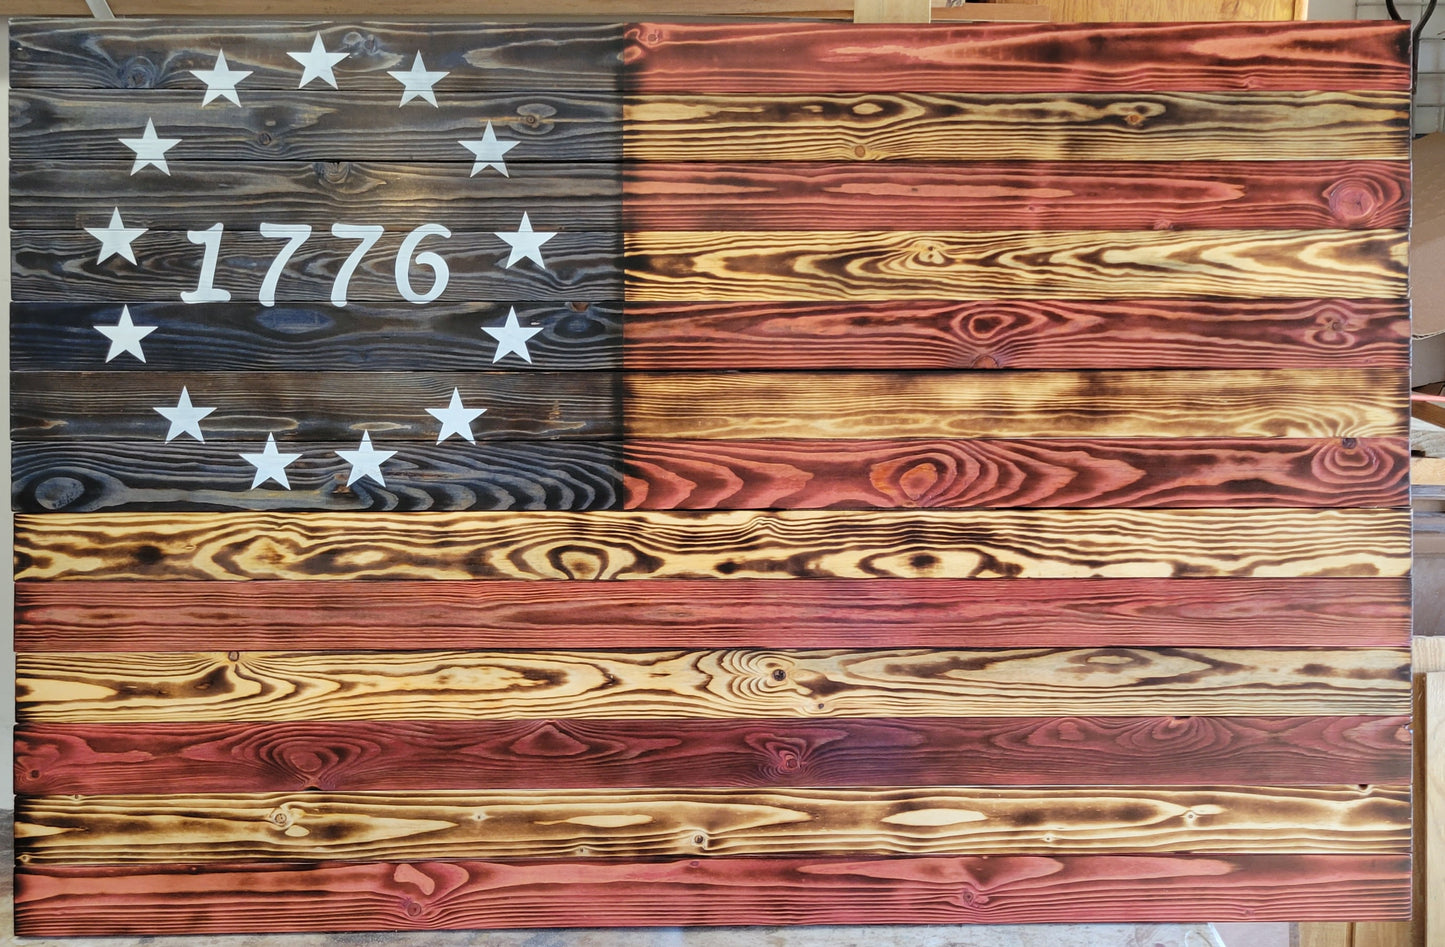 XXLarge Concealed Cabinet 2 Door Wooden 1776 American Flag